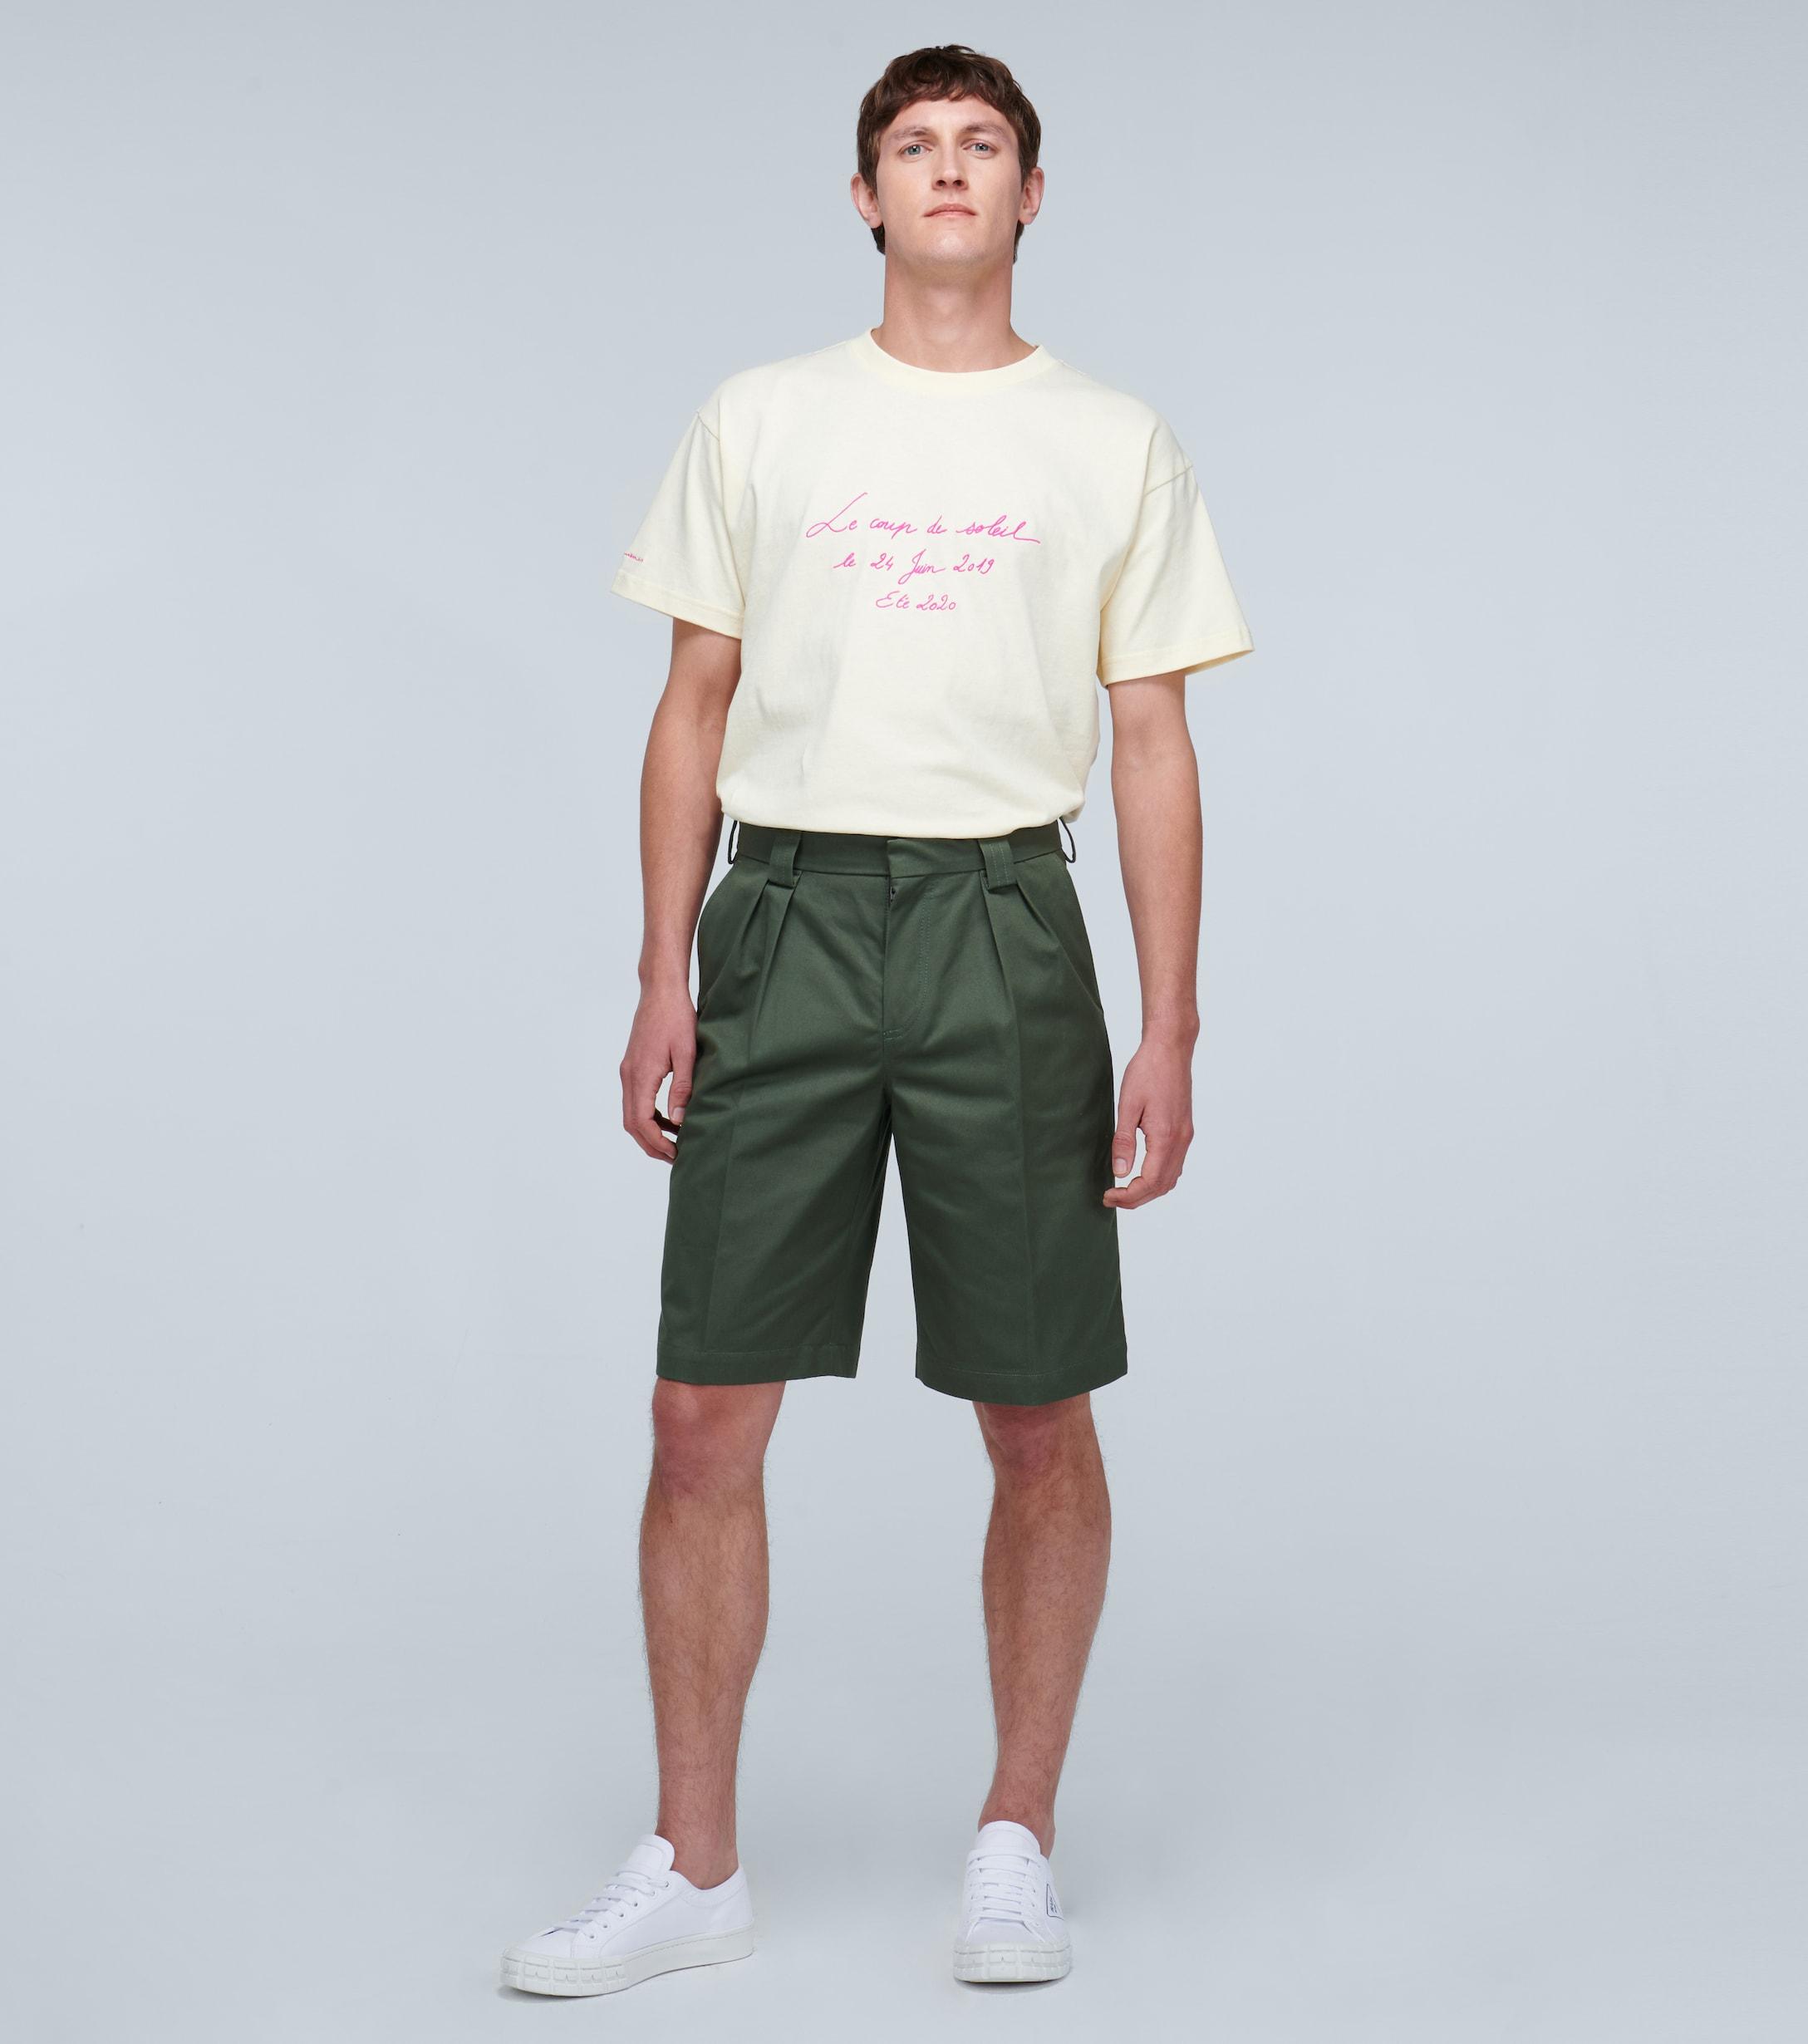 Jacquemus Cotton Le Short De Costume Shorts in Green for Men - Lyst